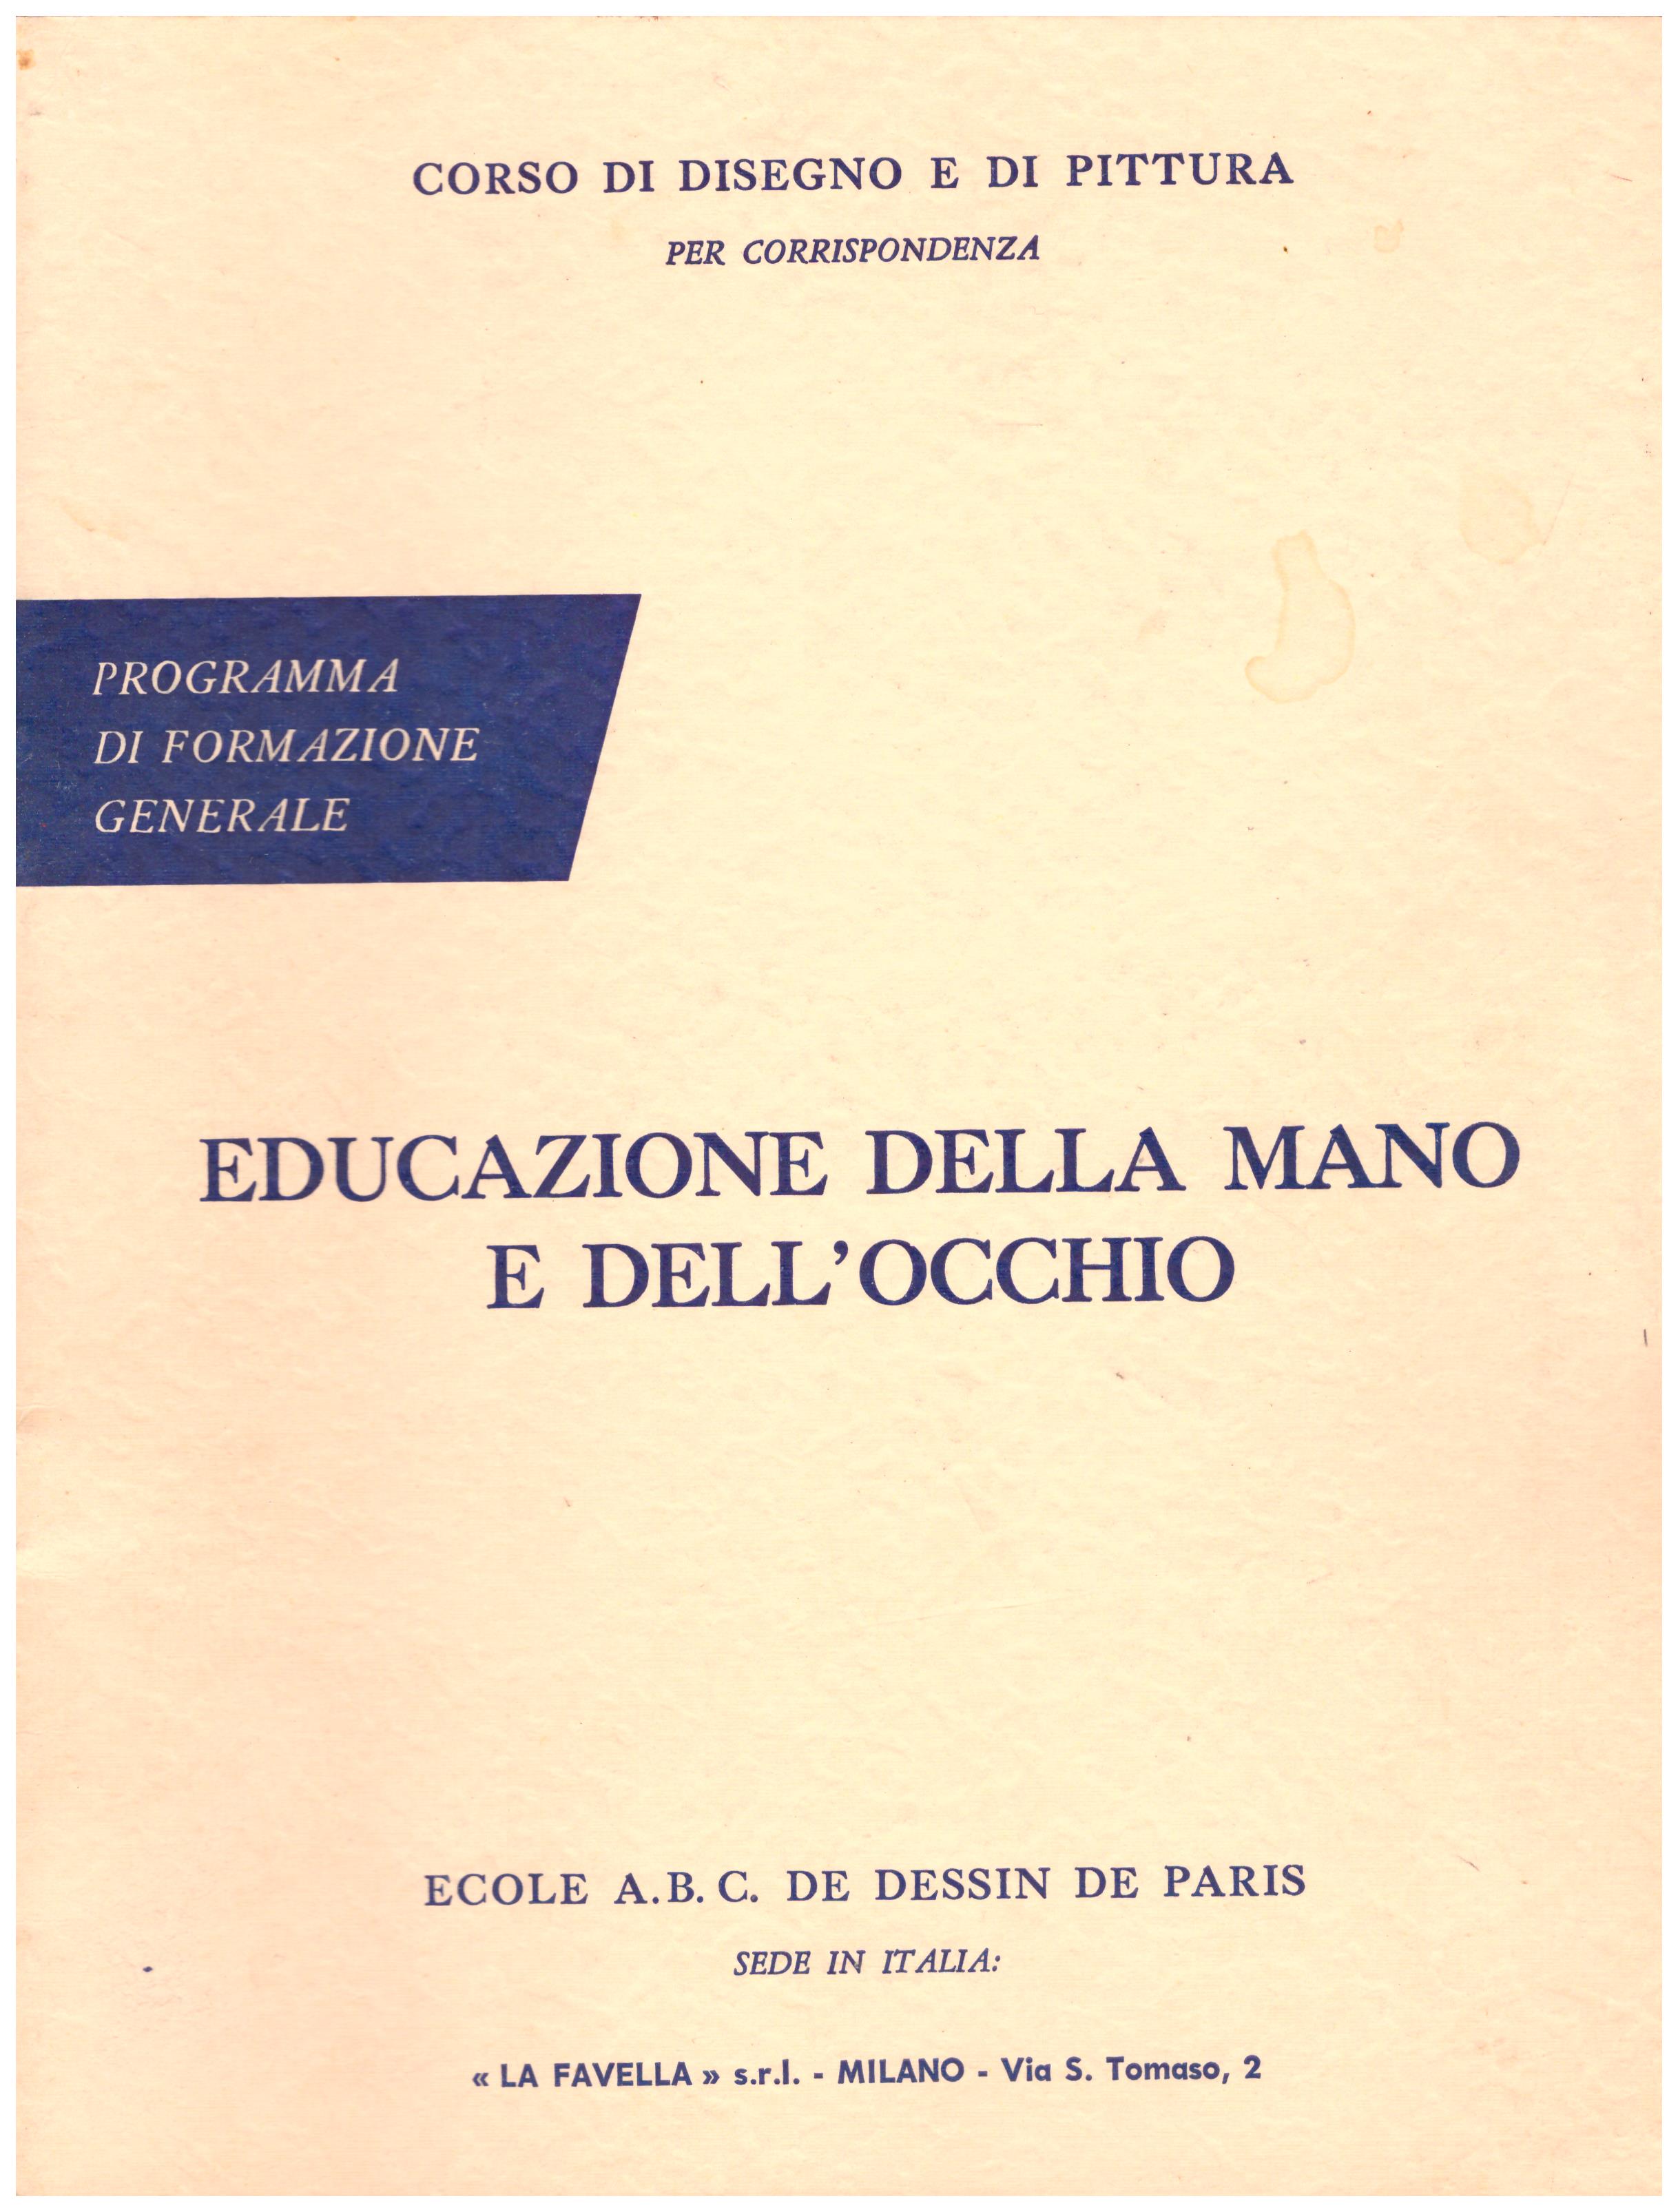 Titolo: Corso di disegno e pittura, educazione della mano e dell'occhio Autore: AA.VV.  Editore: Ecole A.B.C. de dessin de Paris sede in Italia: La Favella, Milano 1962